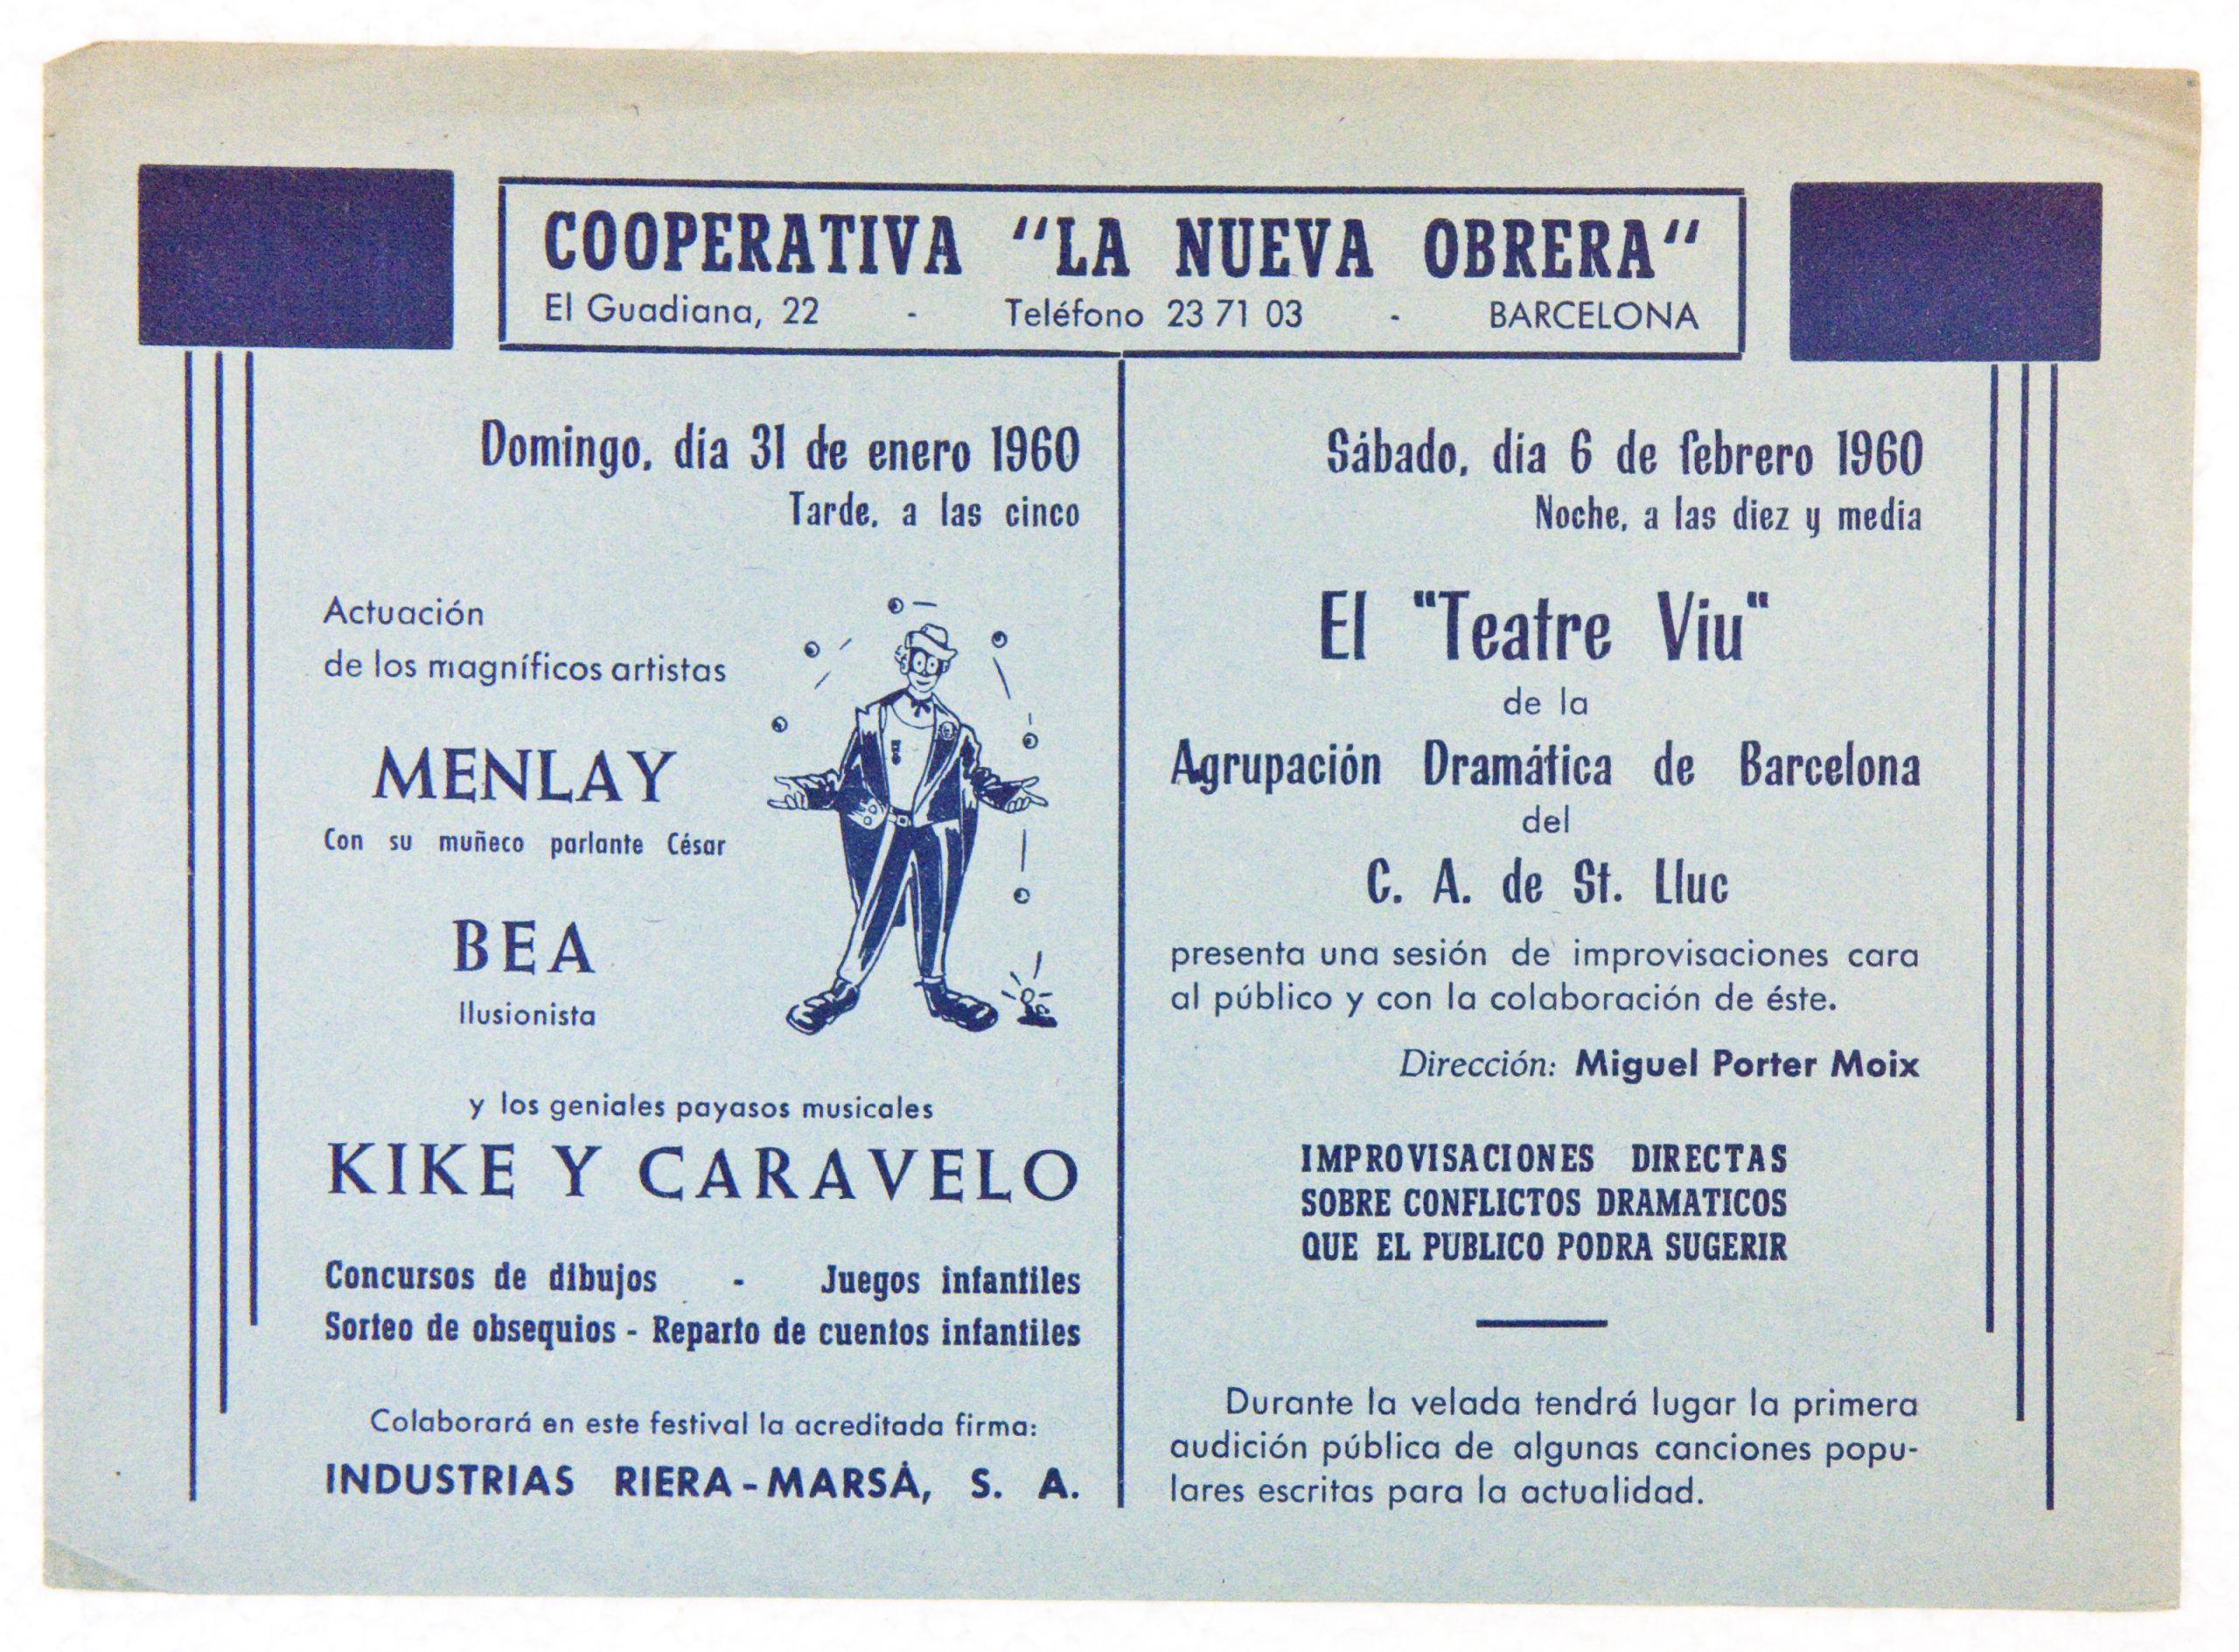 XXVII sessió del Teatre Viu, celebrada a la Cooperativa «La Nueva Obrera» de Barcelona